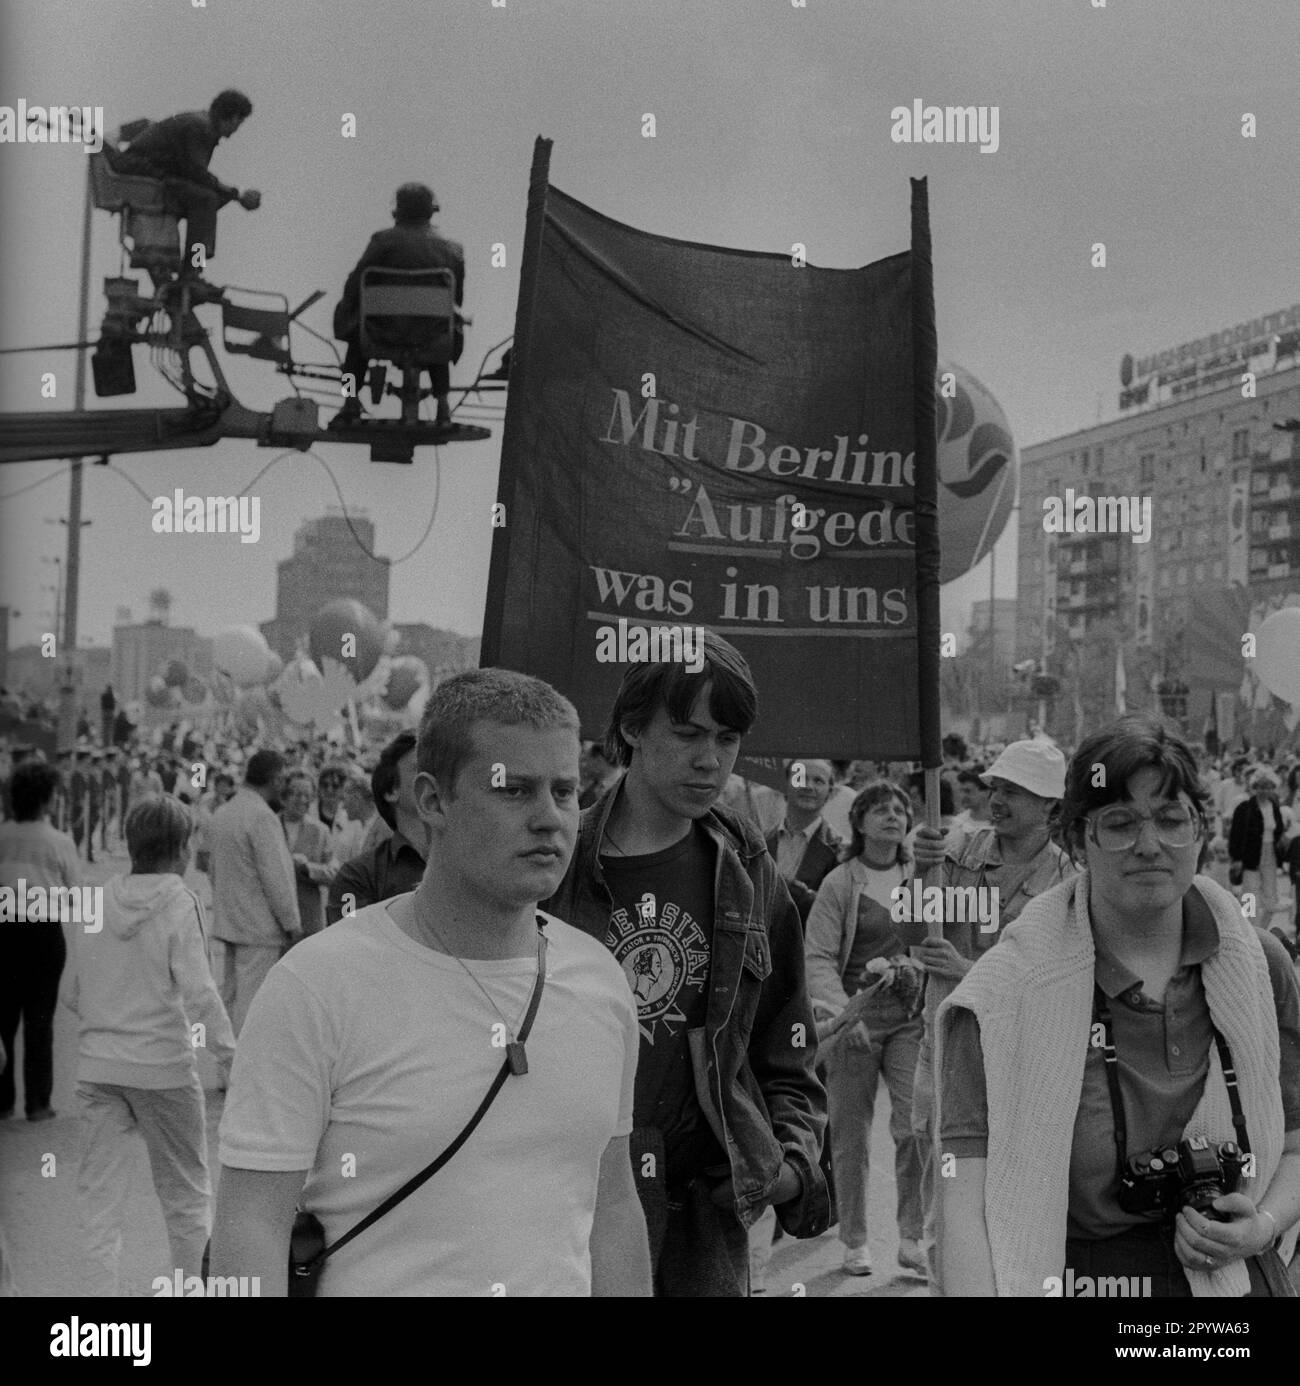 GDR, Berlino, 01.05.1987, 1. Mai Kundgebung 1987 auf der Karl-Marx-Allee, mit Berlin..., Aufgedeckt, was in uns steckt, (TV broadcast, camera), [traduzione automatica] Foto Stock